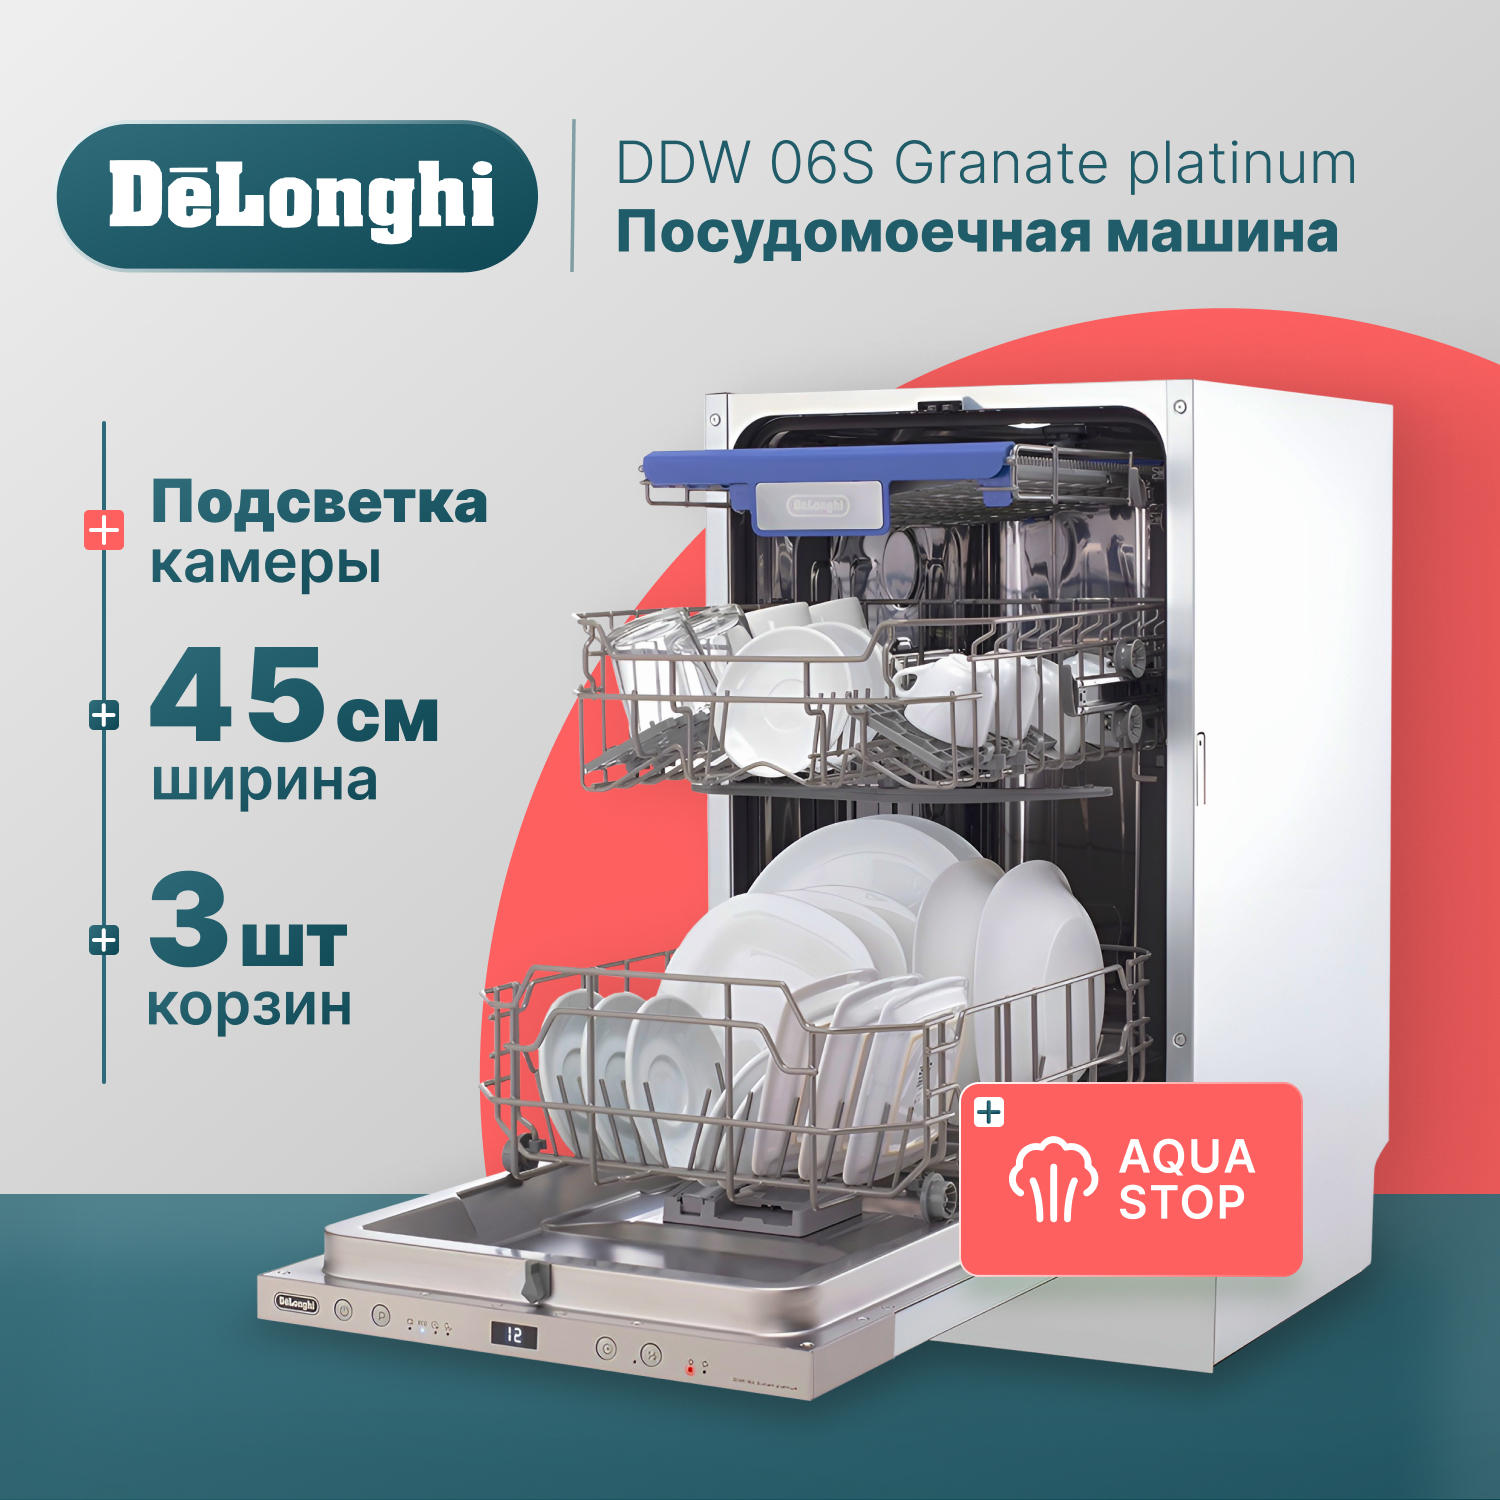 Встраиваемая посудомоечная машина Delonghi DDW06S Granate platinum встраиваемая посудомоечная машина delonghi ddw08s